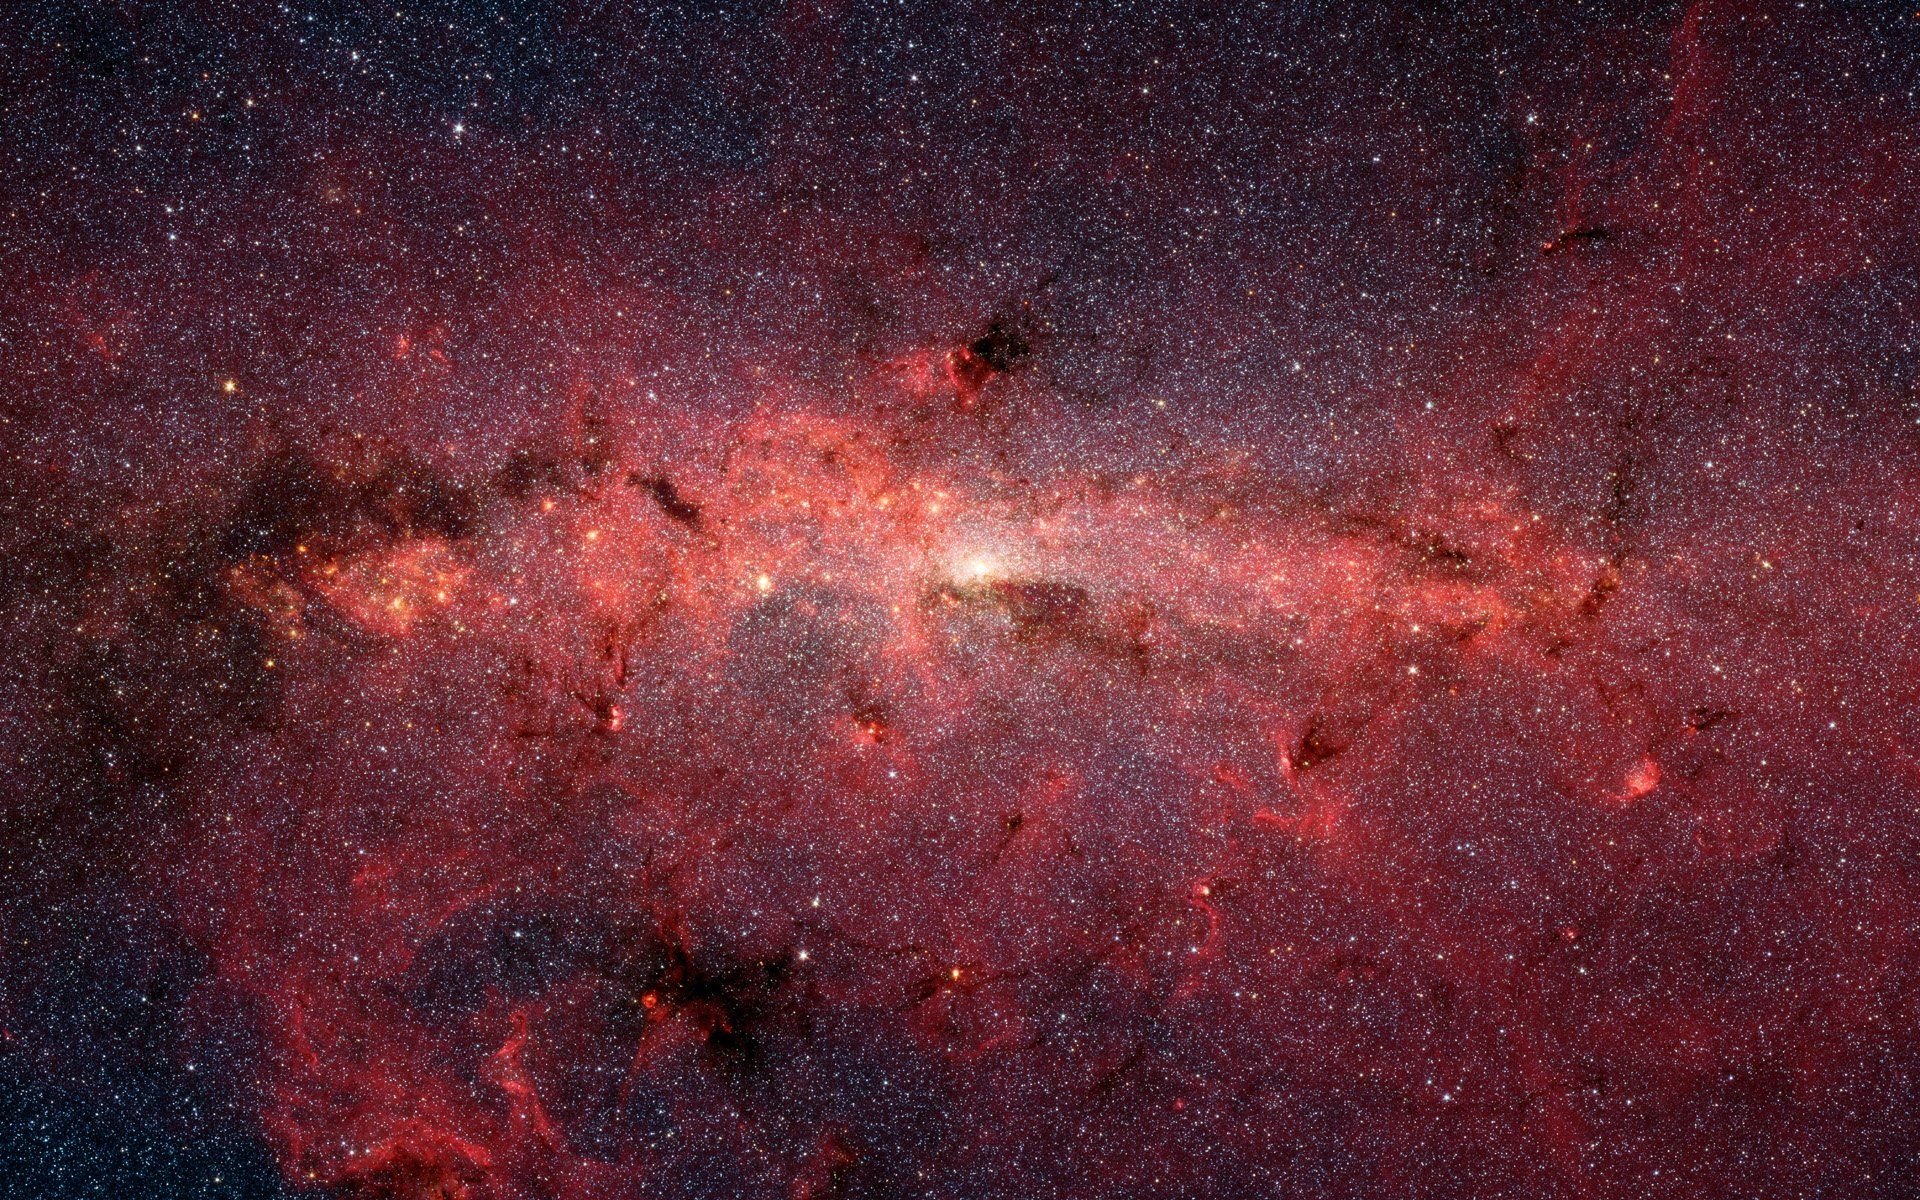 Rosette Nebula Wallpapers